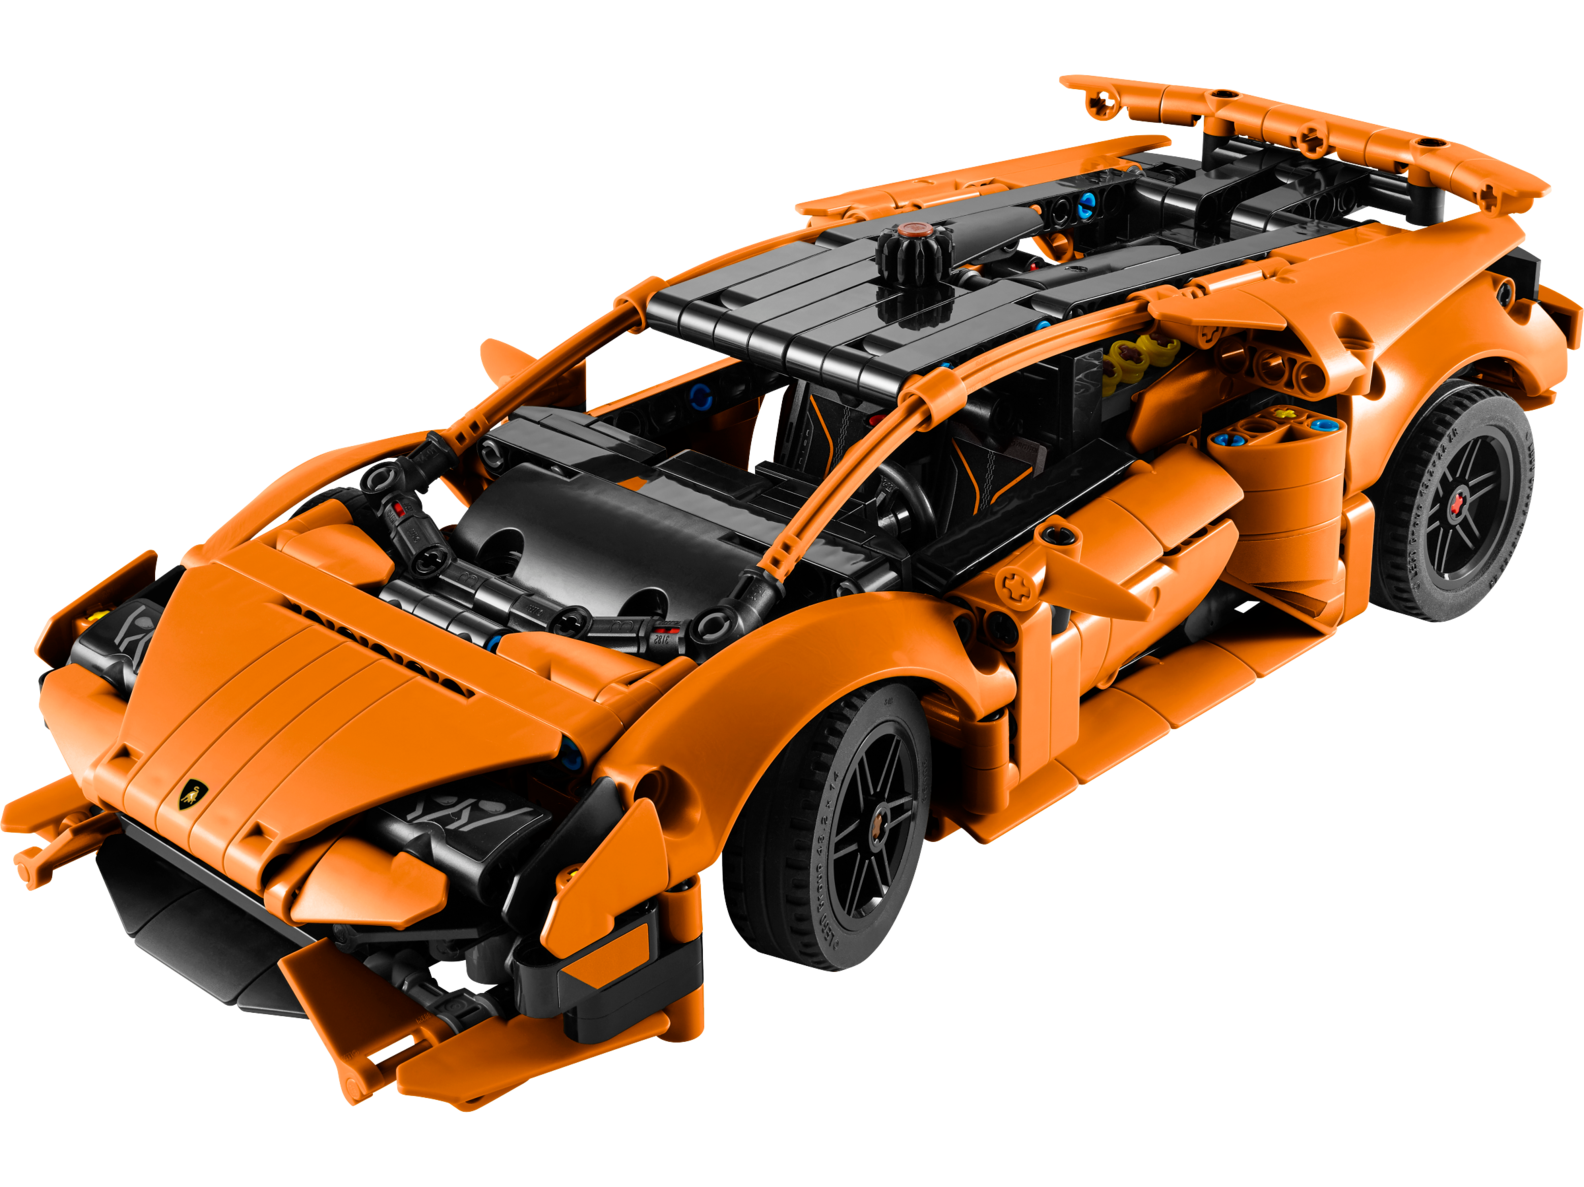 Tilbud: Oransje Lamborghini Huracán Tecnica kr 719,9 på Lego